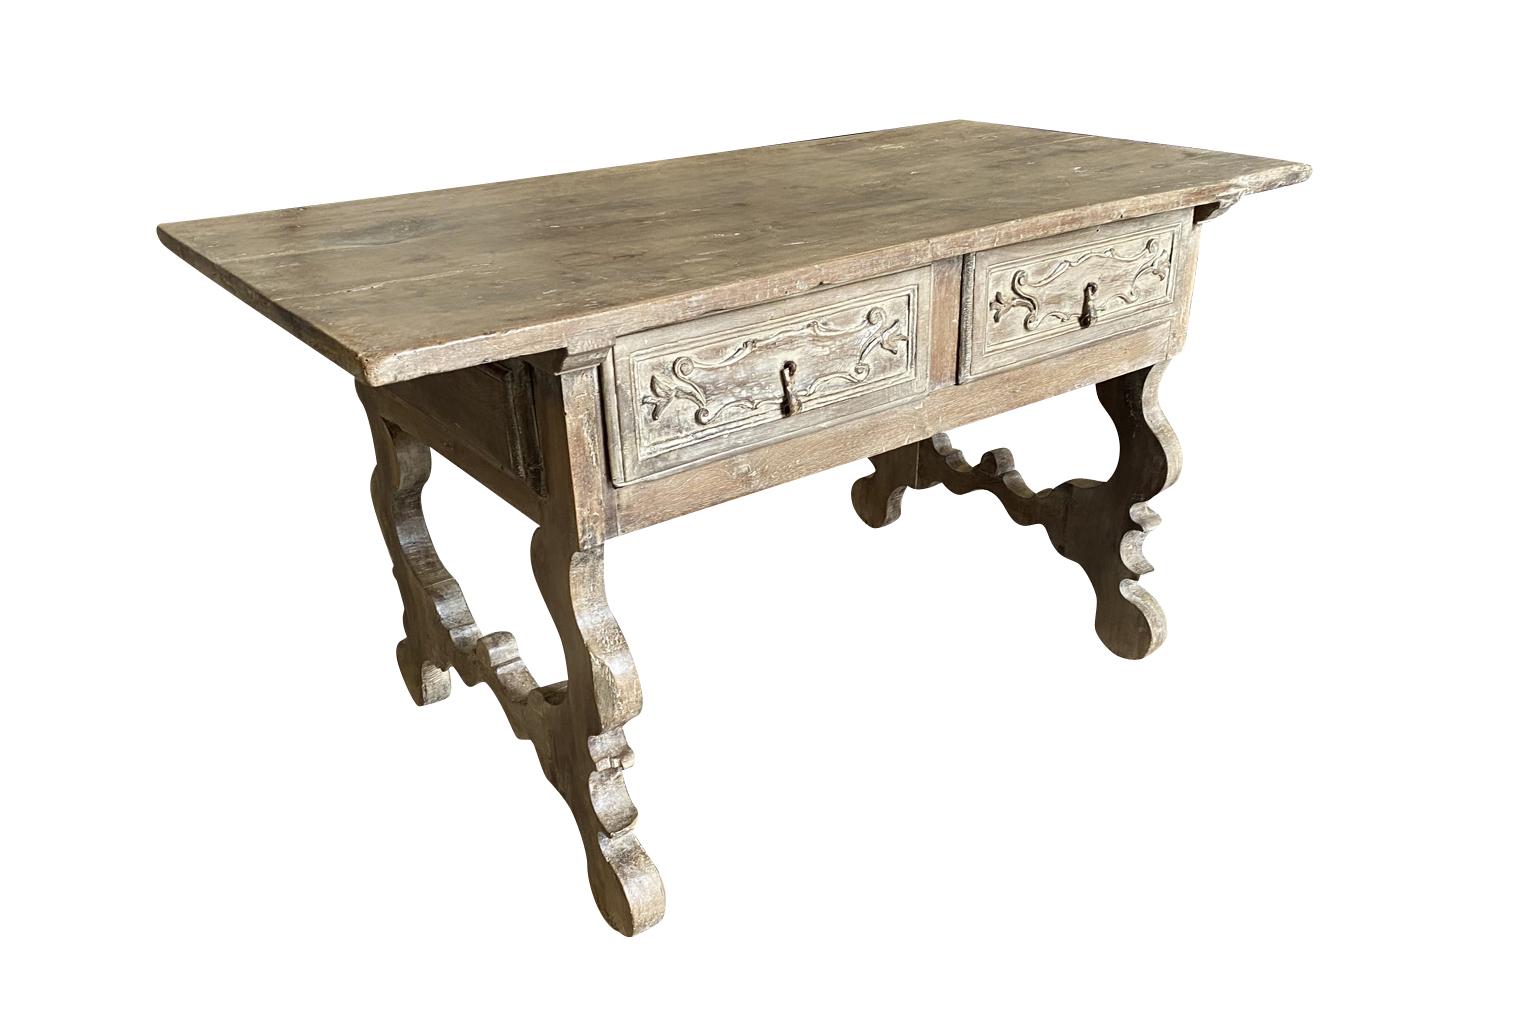 Très belle table centrale - table à écrire du 17e siècle provenant de la région de Bologne en Italie. Magnifiquement construit en noyer avec deux tiroirs, des pieds en forme de lyre classique et un plateau en bois massif. Étonnant.